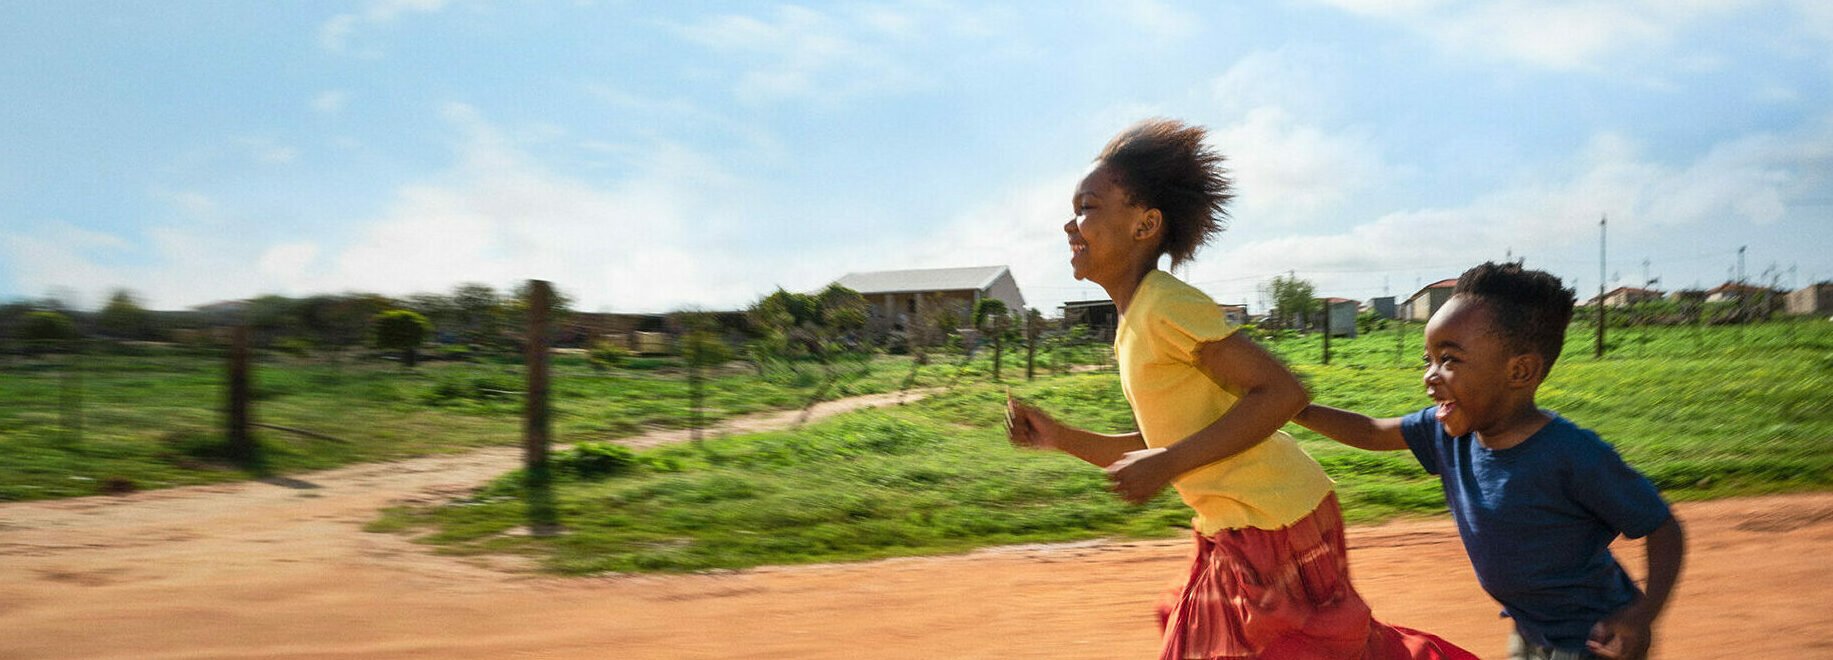 Två glada barn som springer. En flicka och en pojke.